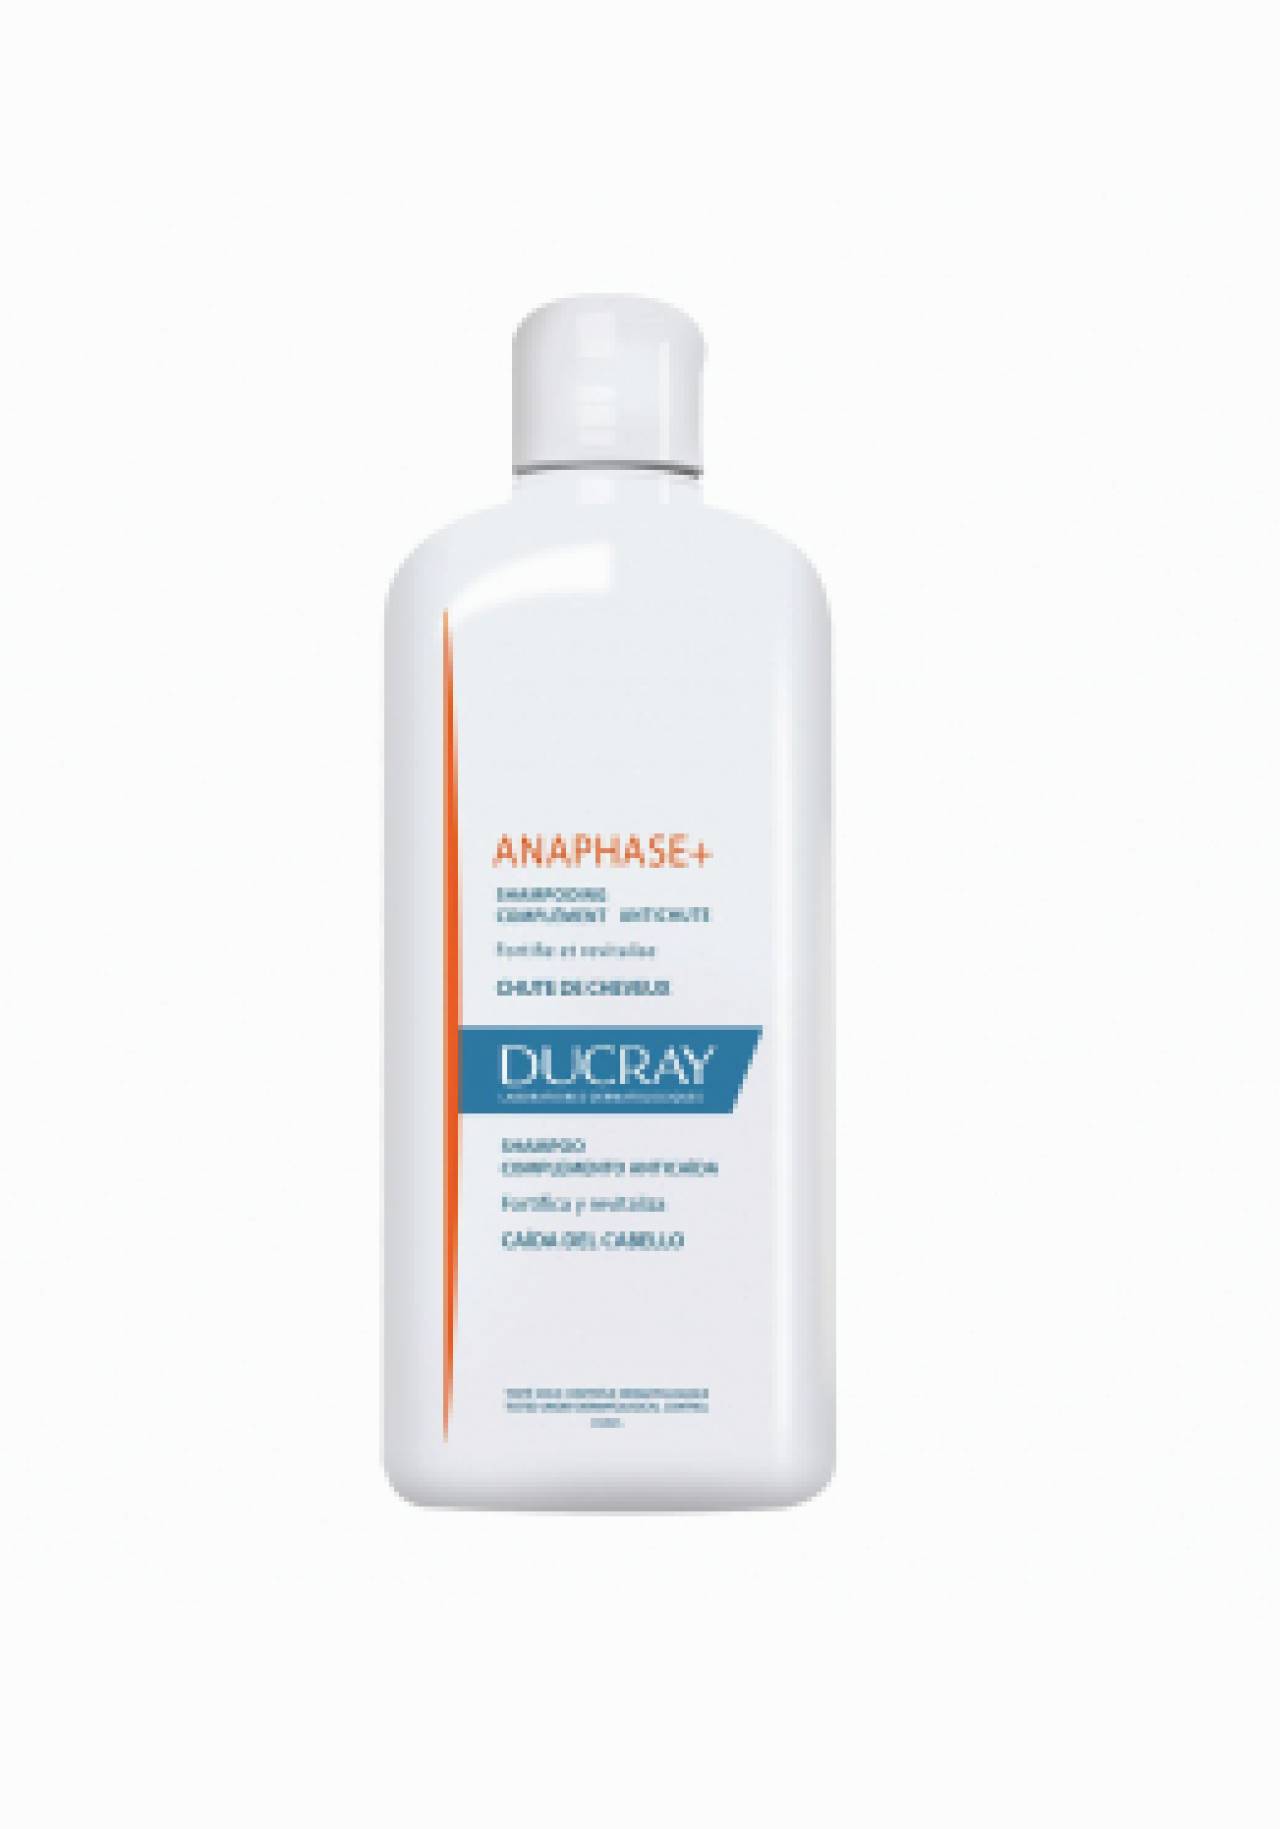 Champú anticaída Anaphase+ deDucray 10 champús de farmacia por menos de 20€ que cuidan más tu pelo que uno normal